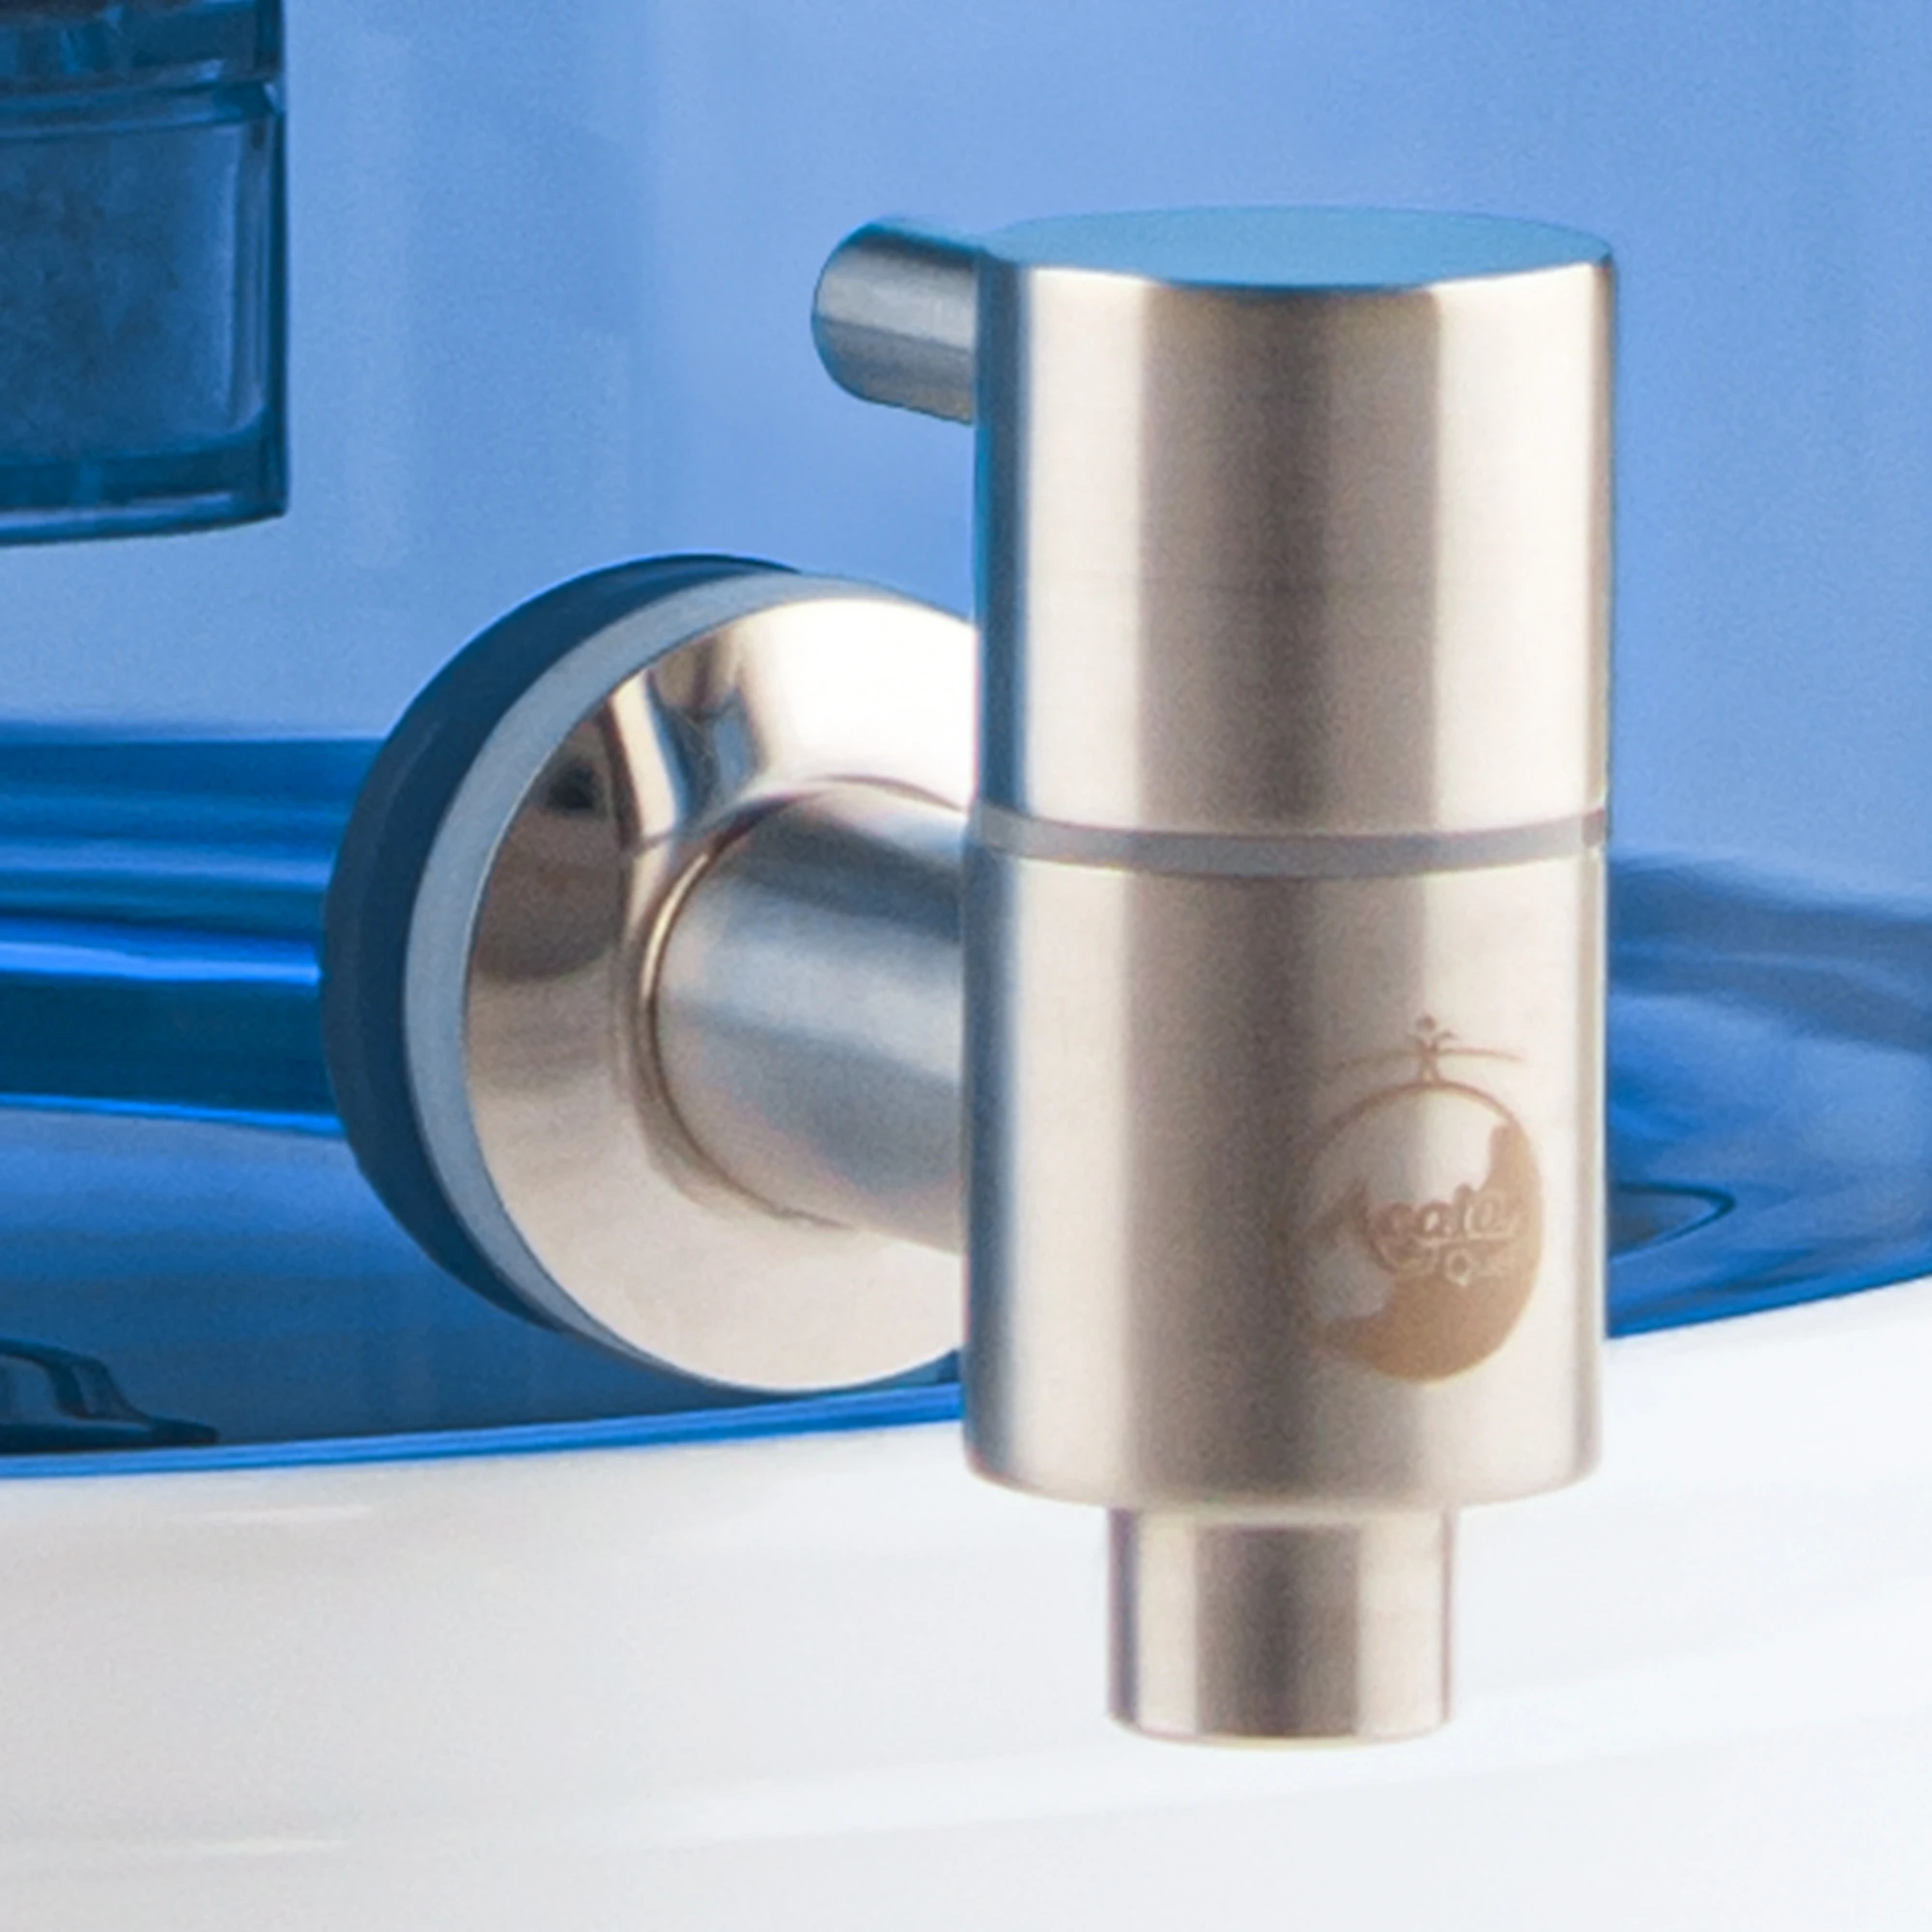 Zu sehen ist der Edelstahl Wasserhahn Makino für Acala Stand Wasserfilter an einem Glastank in blau montiert in Großaufnahme. Der Hahn ist silber und man sieht das AcalaQuell Logo darauf. 